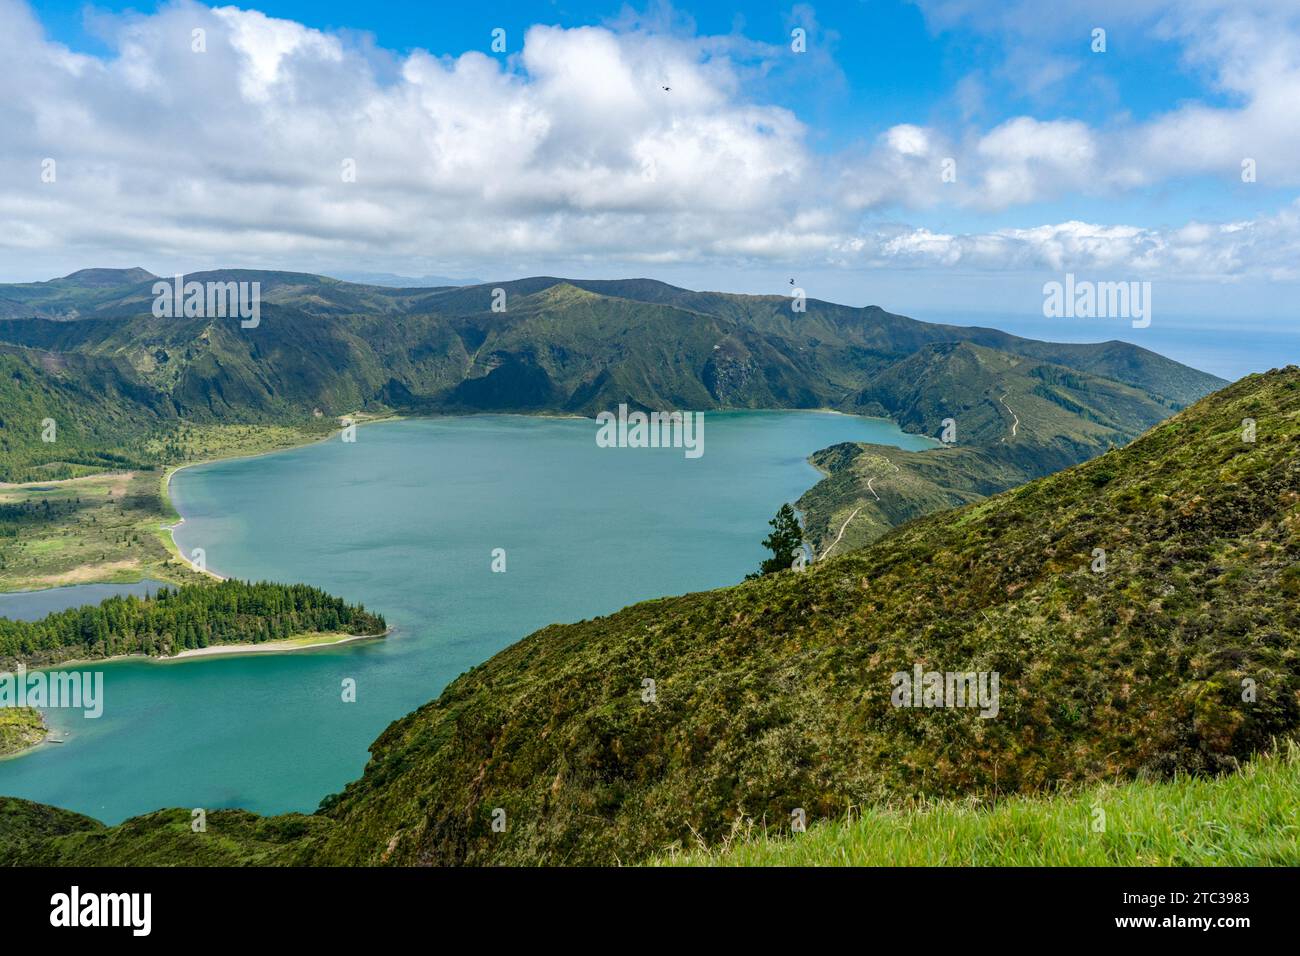 Die Lagune der Sieben Städte auf den Azoren ist ein Spektakel der Ruhe und Schönheit, wo das blaue Wasser mit dem üppigen Grün der vulkanischen Hänge verschmilzt. Stockfoto